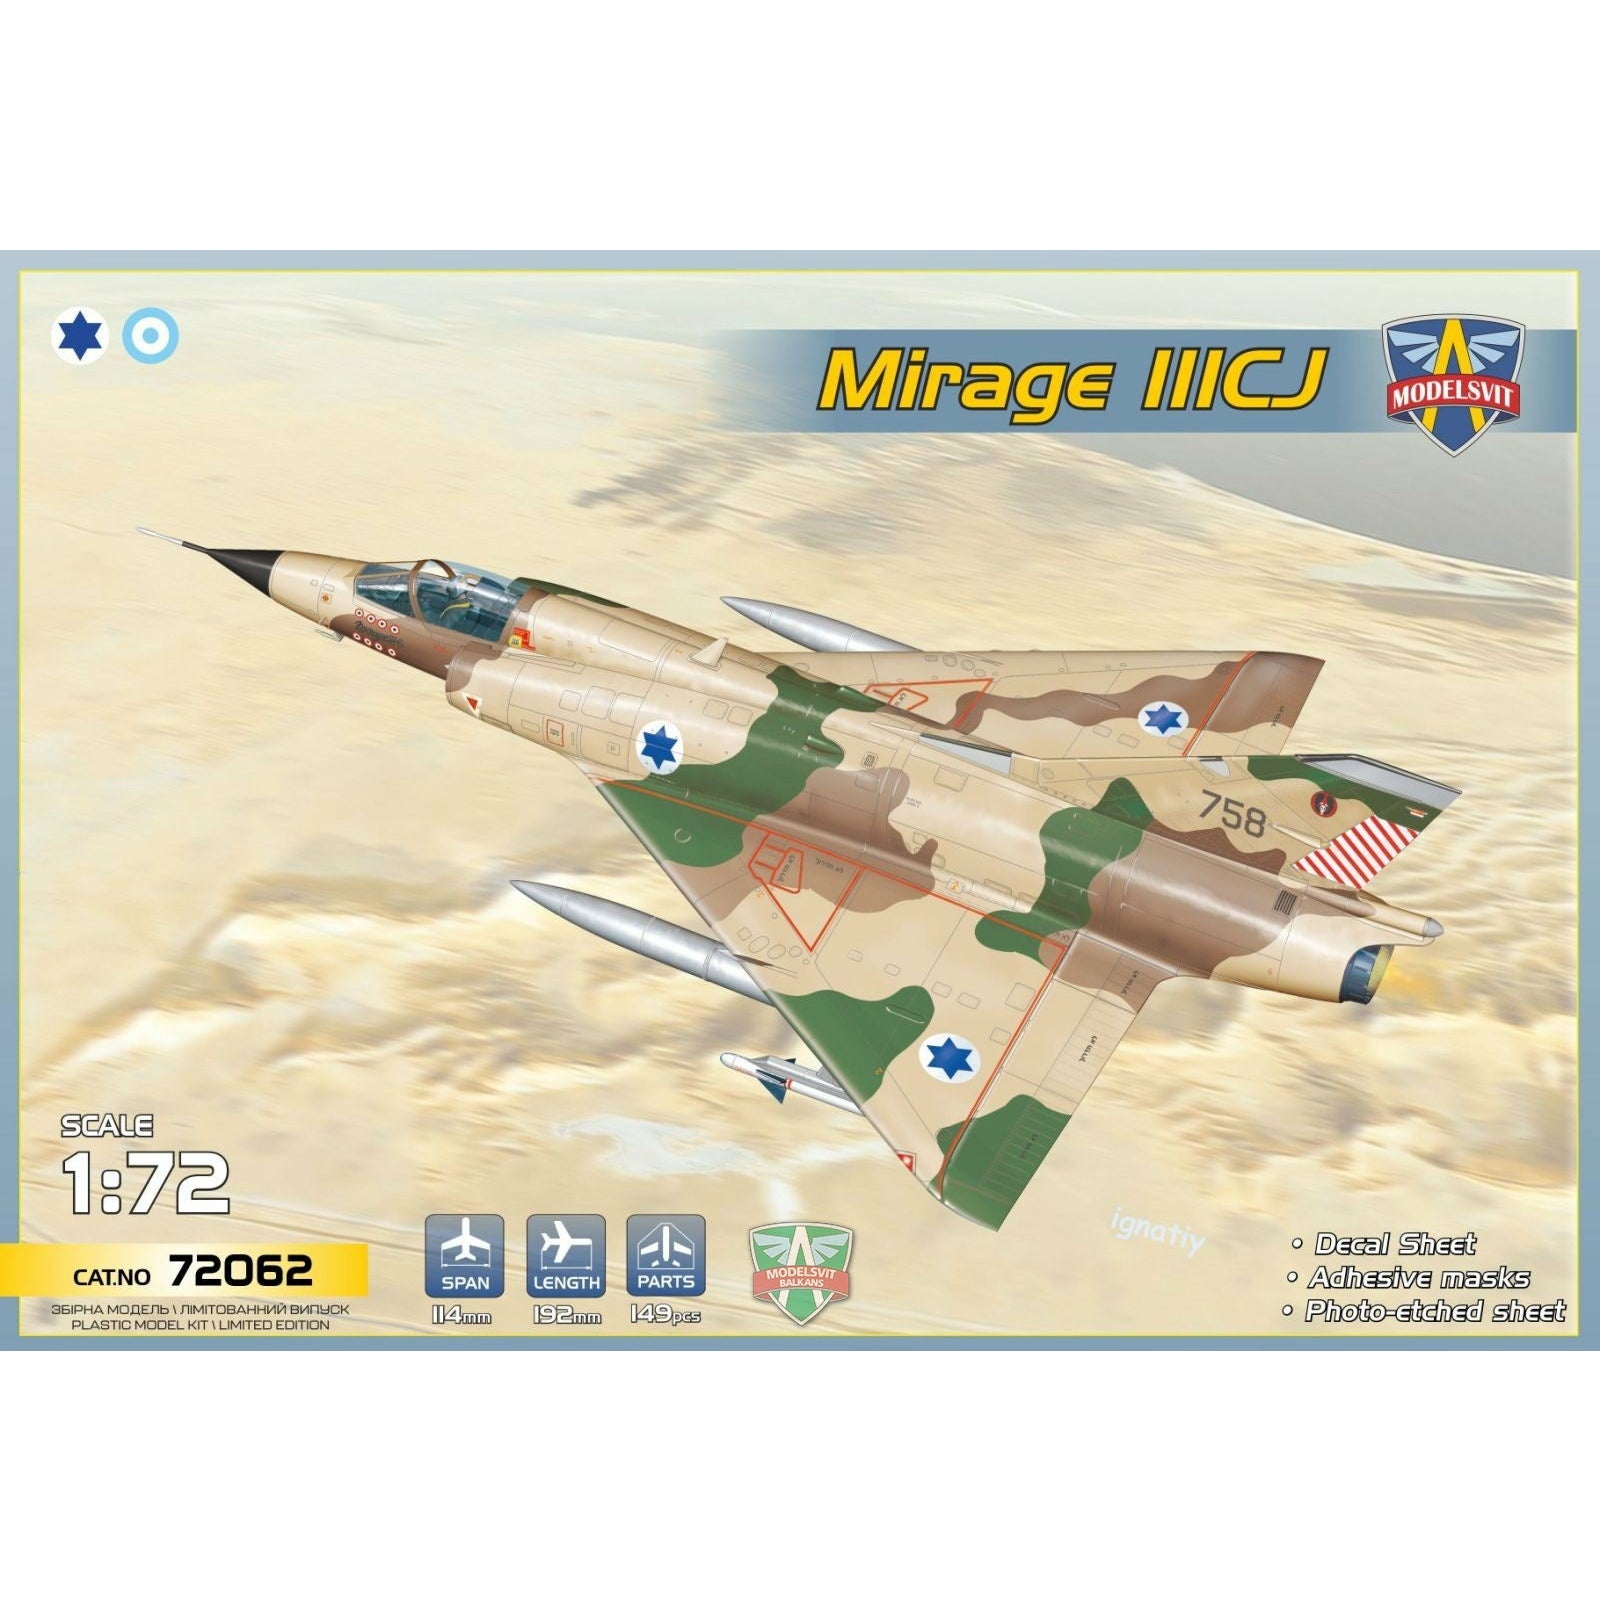 Mirage IIICJ (Izraeli A.F / Argentinian A.F.) 1/72 #72062 by Modelsvit